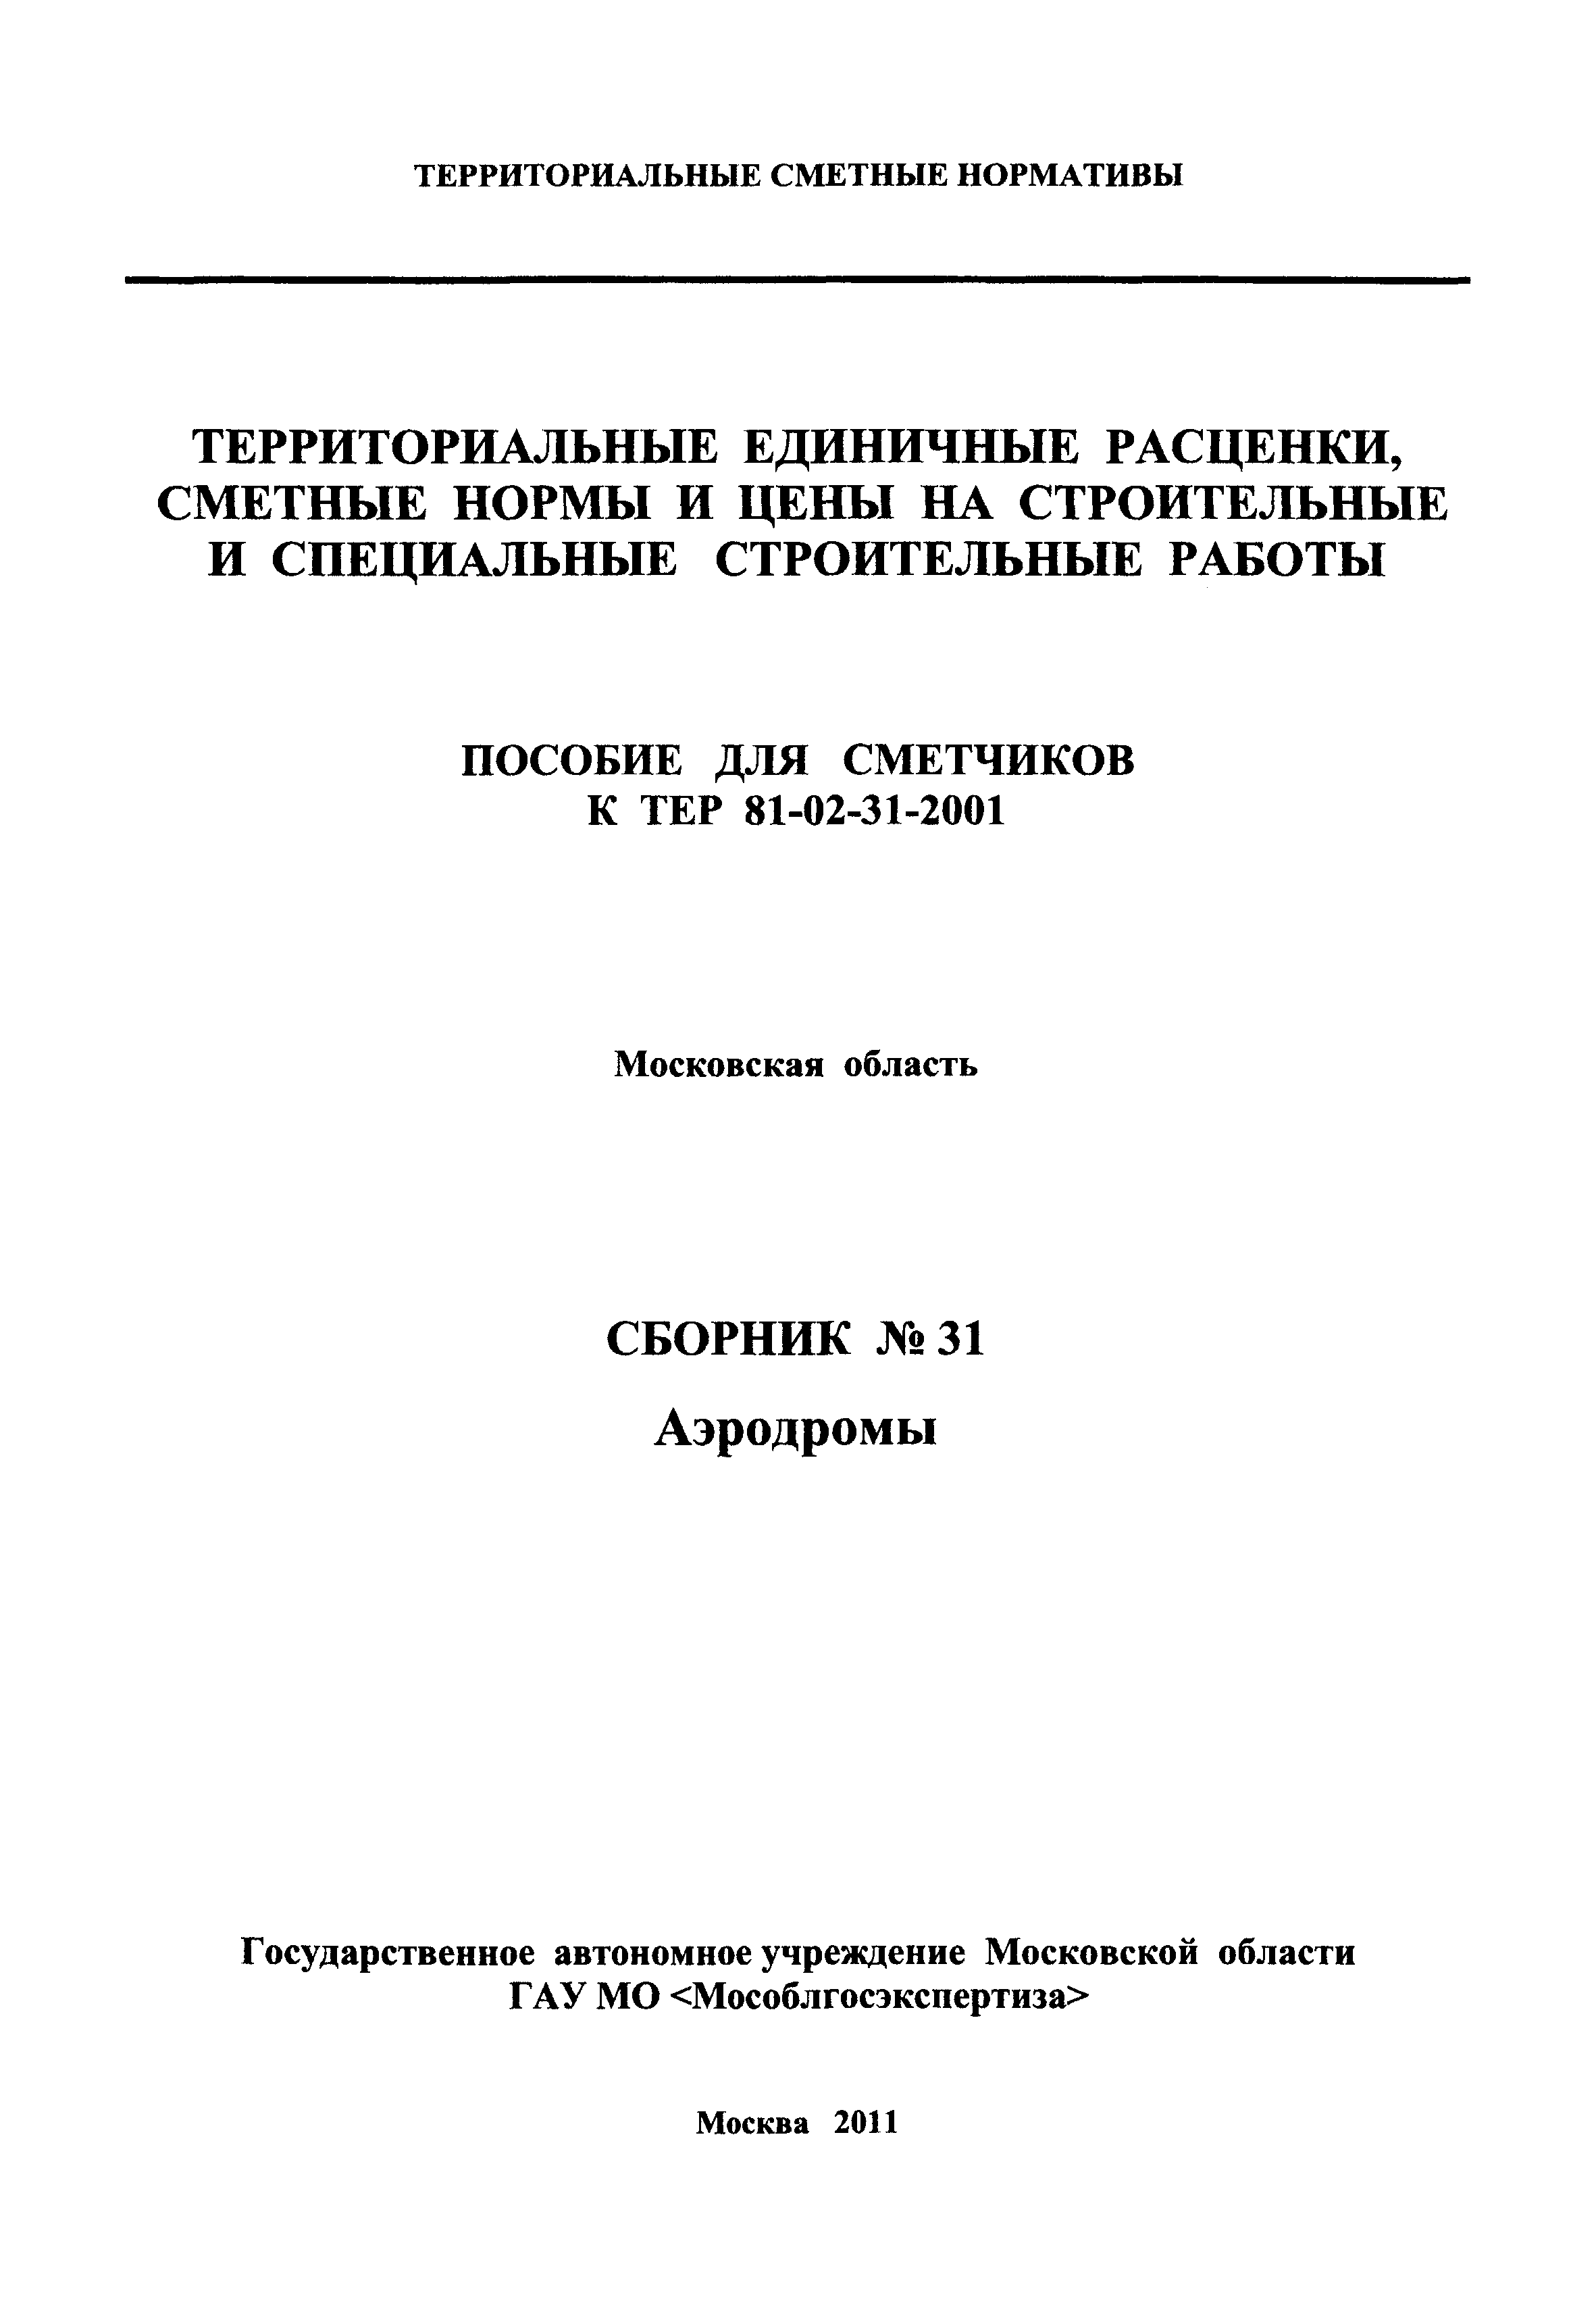 ГЭСНПиТЕР 2001-31 Московской области